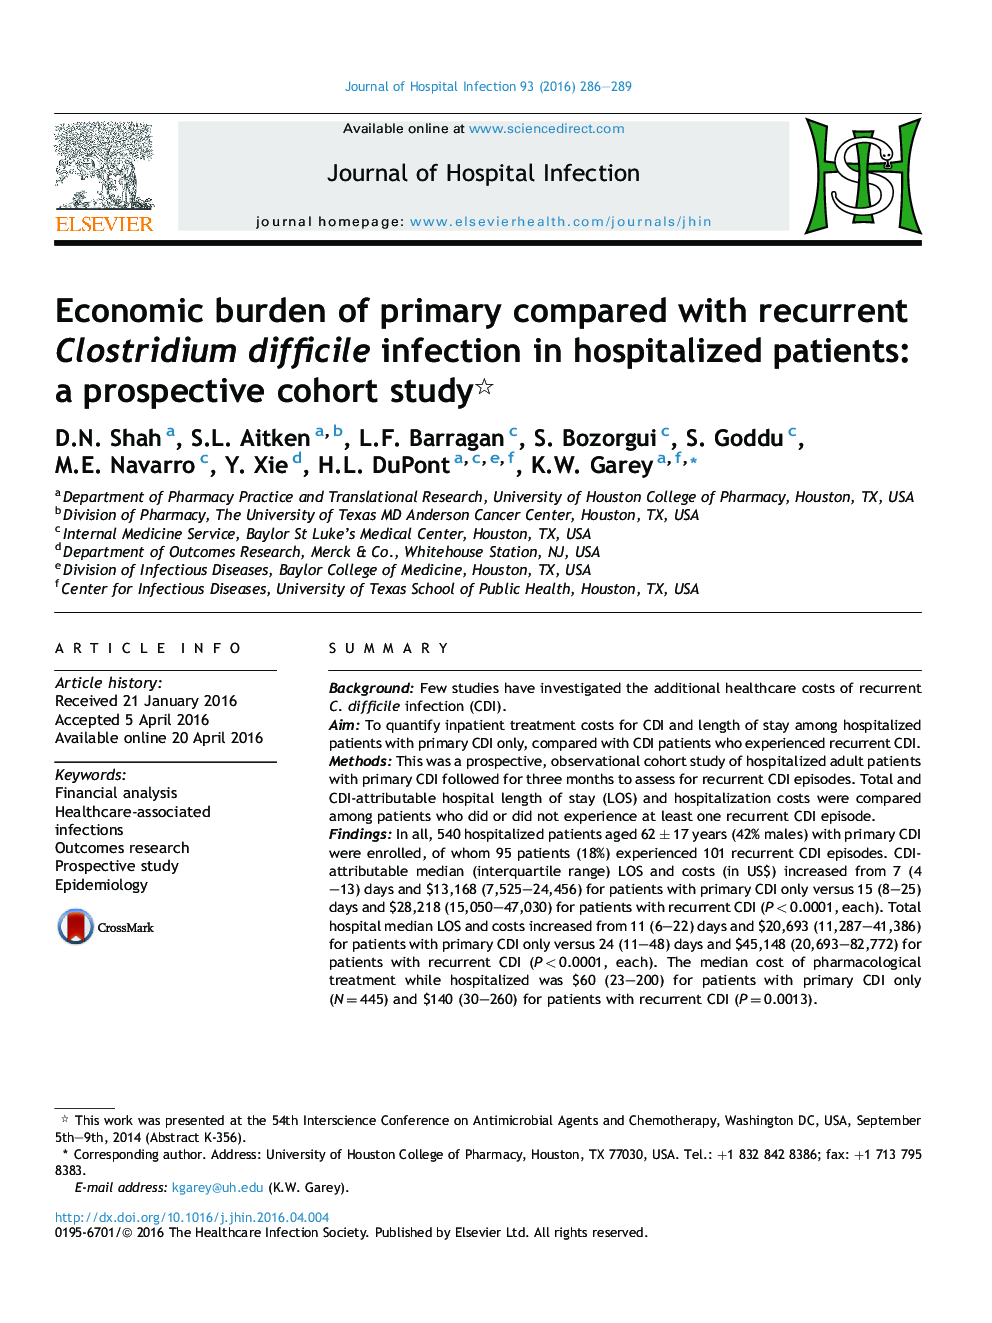 بار اقتصادی در مقايسه اولیه با عفونت مکرر Clostridium difficile در بيماران بستری: يک مطالعه کوهورت آينده نگر